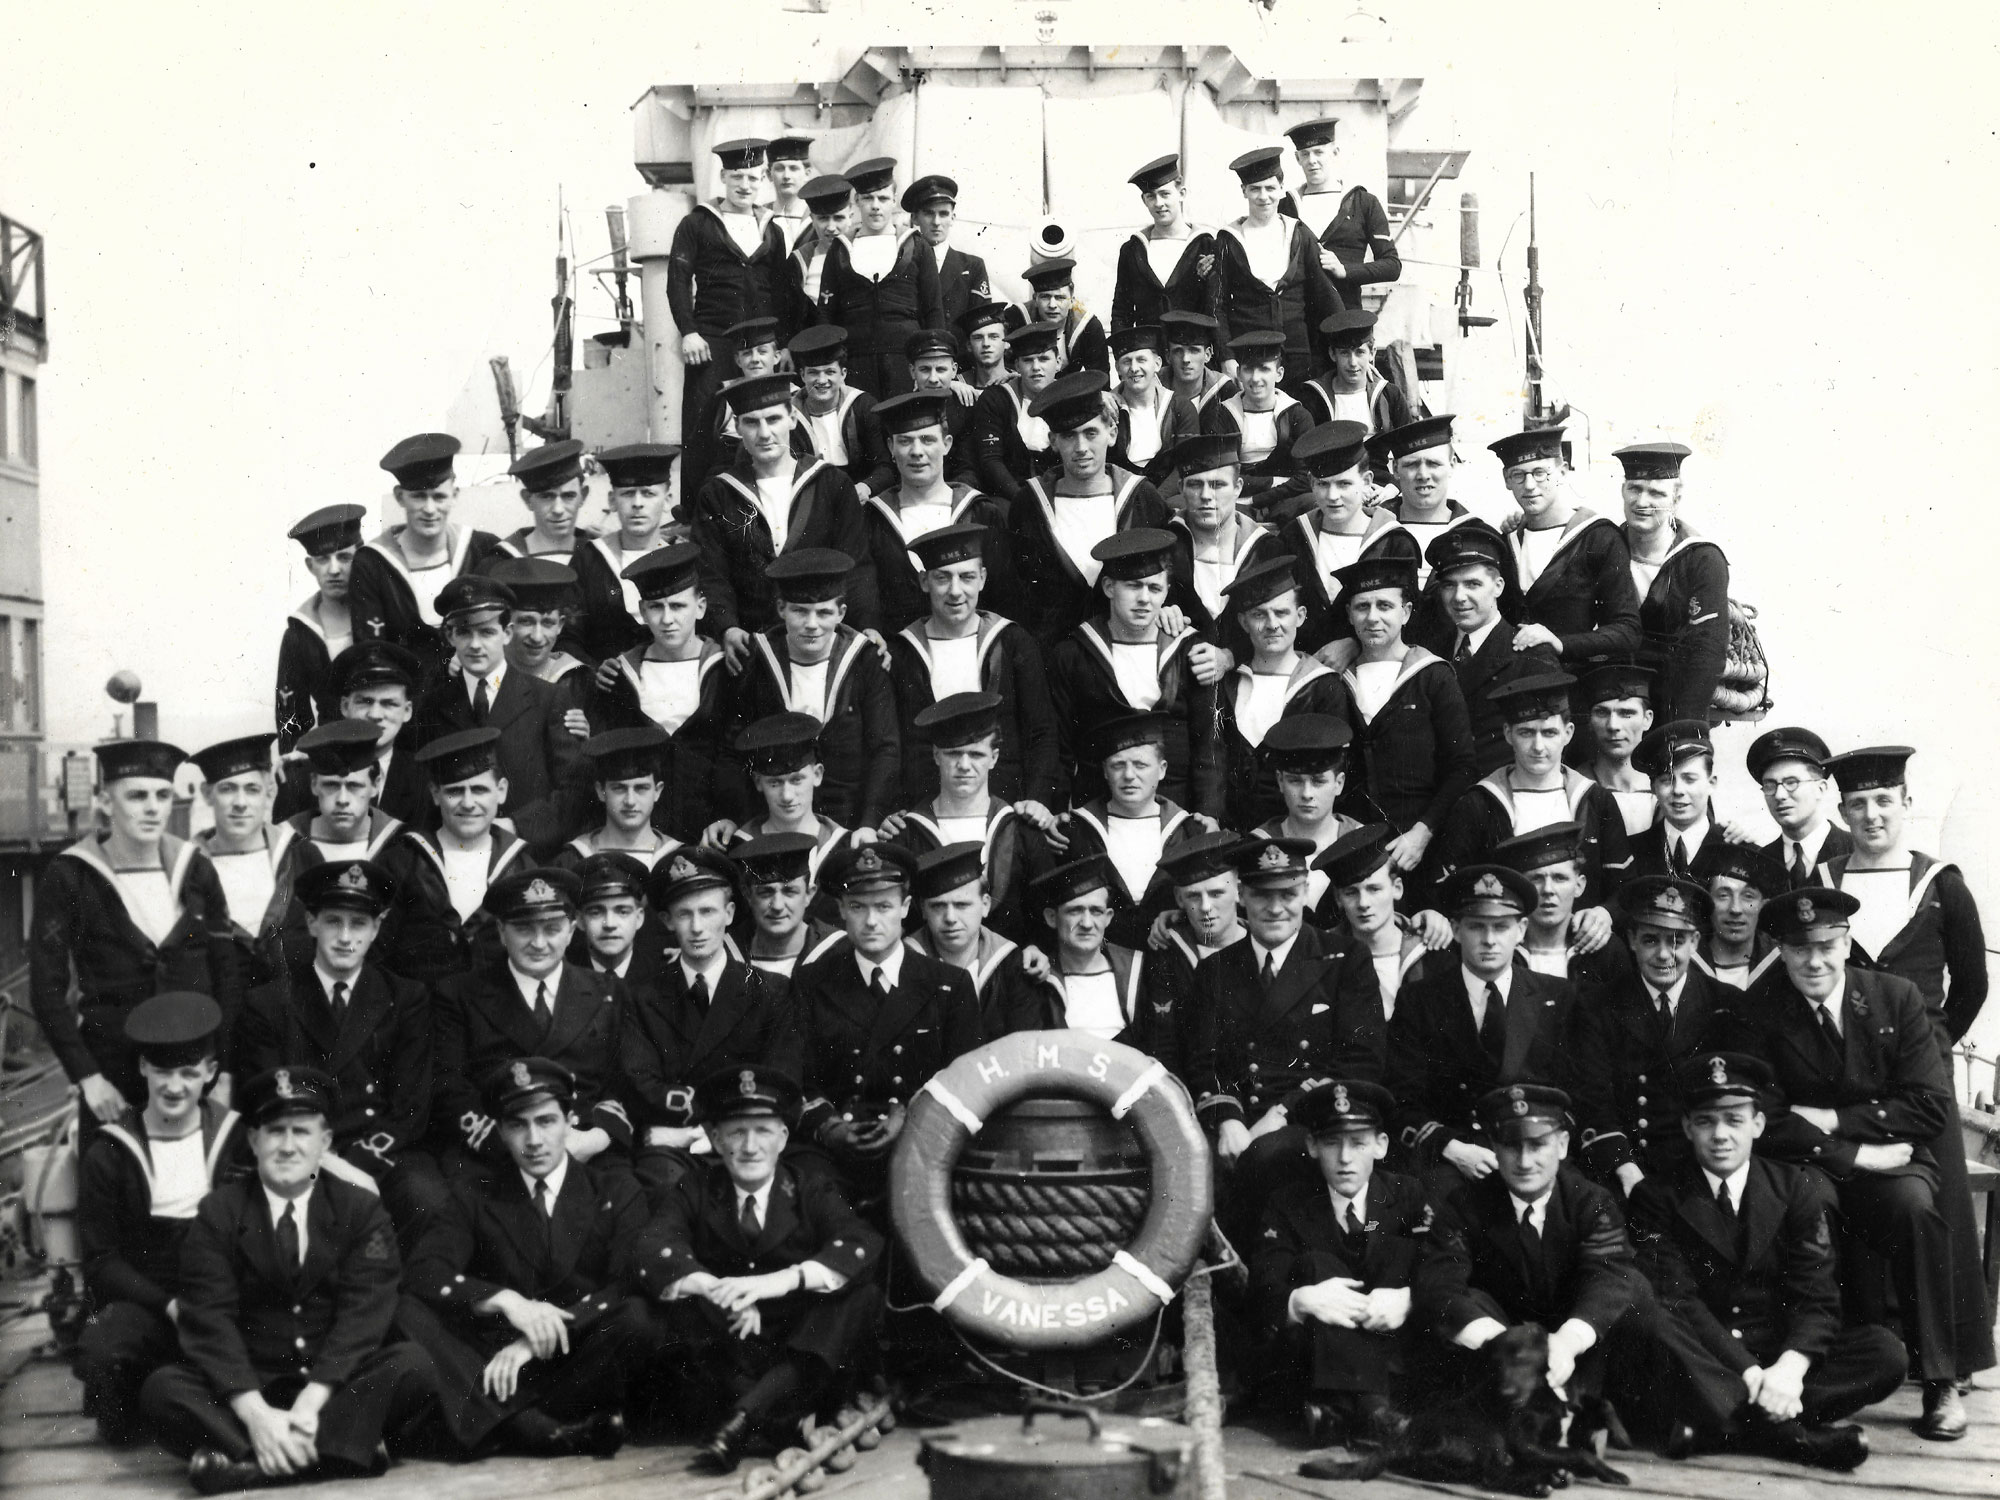 The ship's company of HMS Vanessa